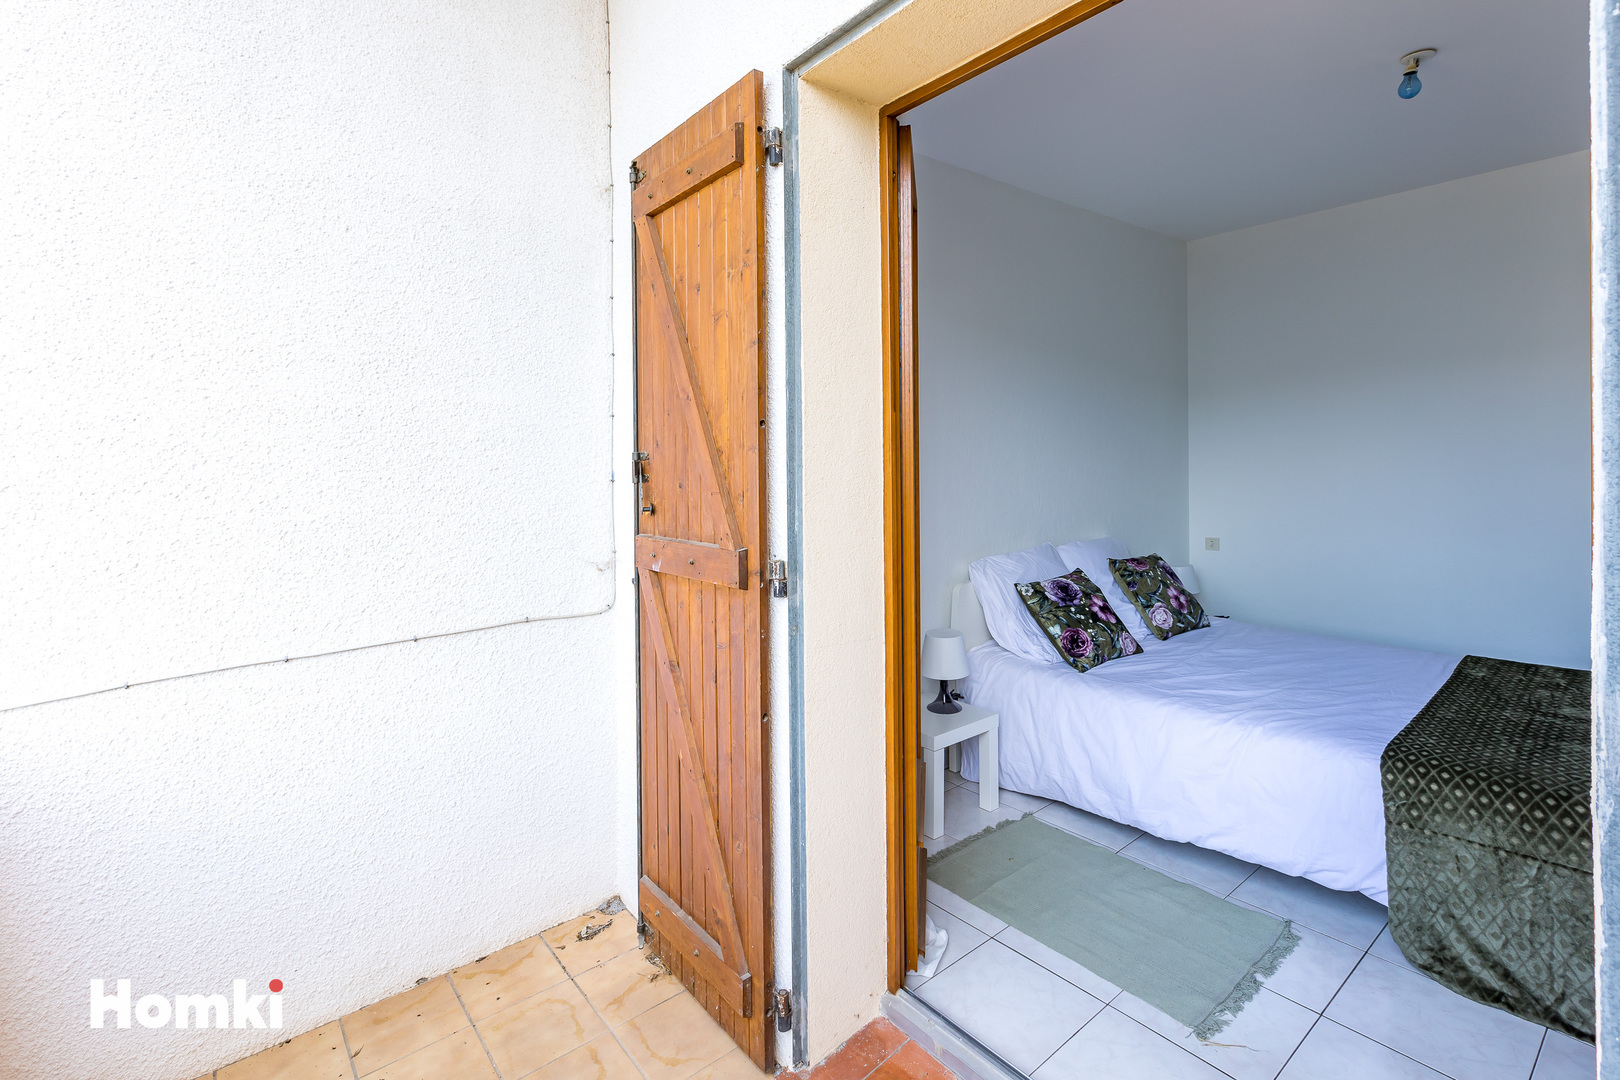 Homki - Vente Maison/villa  de 70.0 m² à Agde 34300